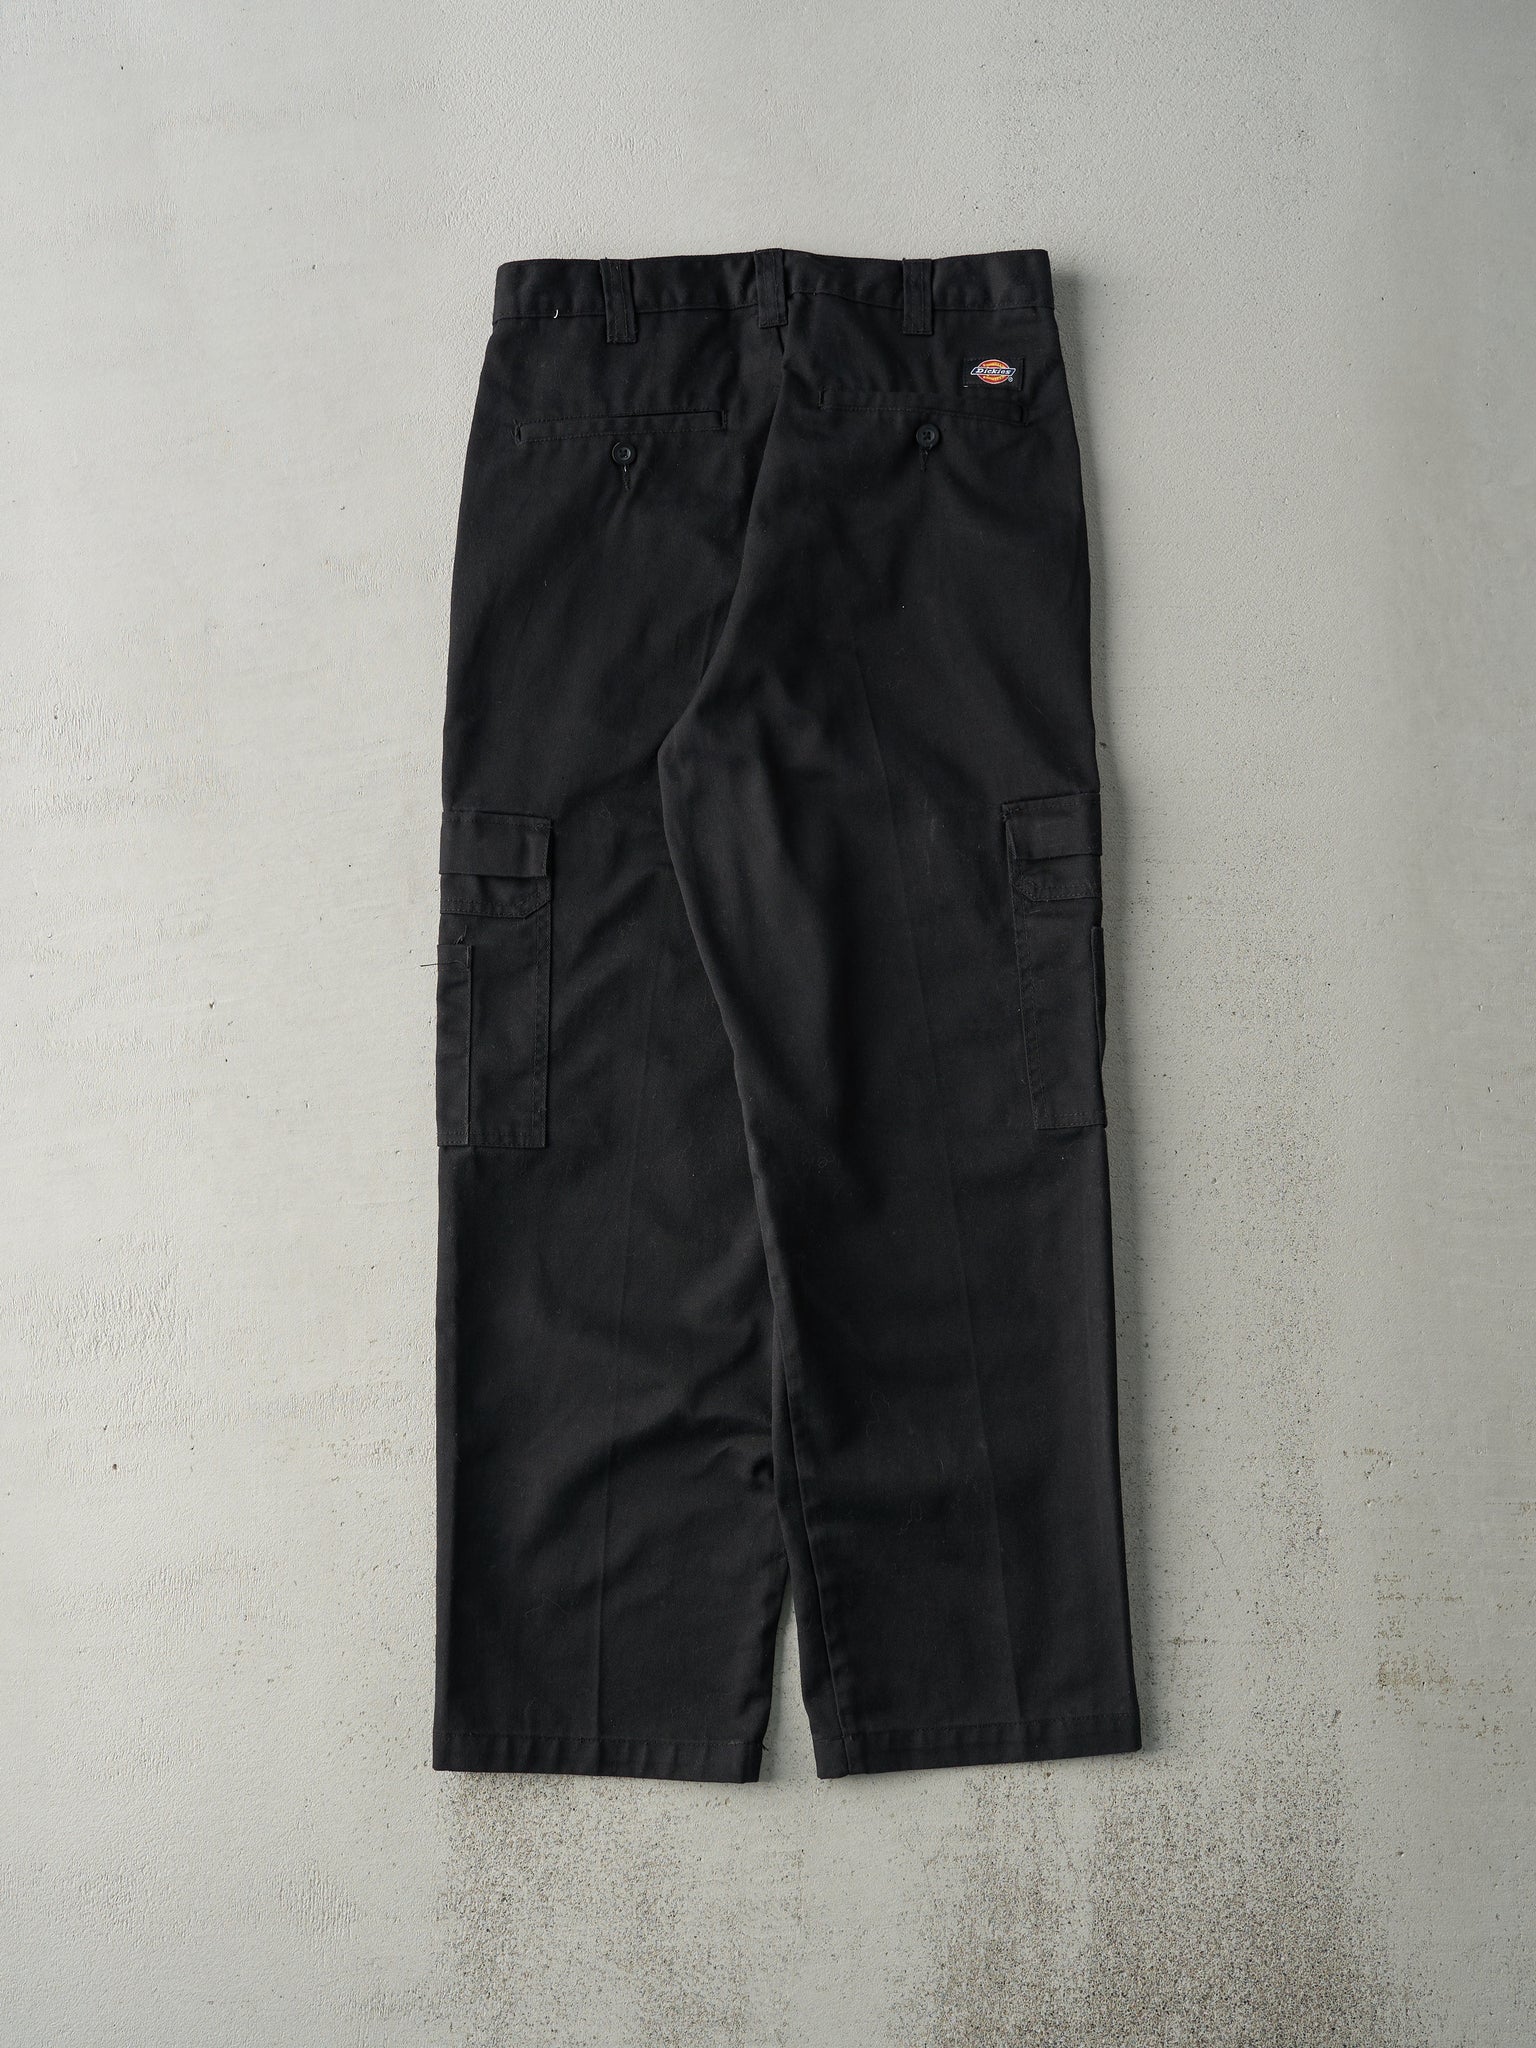 Vintage Y2K Black Dickies Cargo Work Pants (31x29)